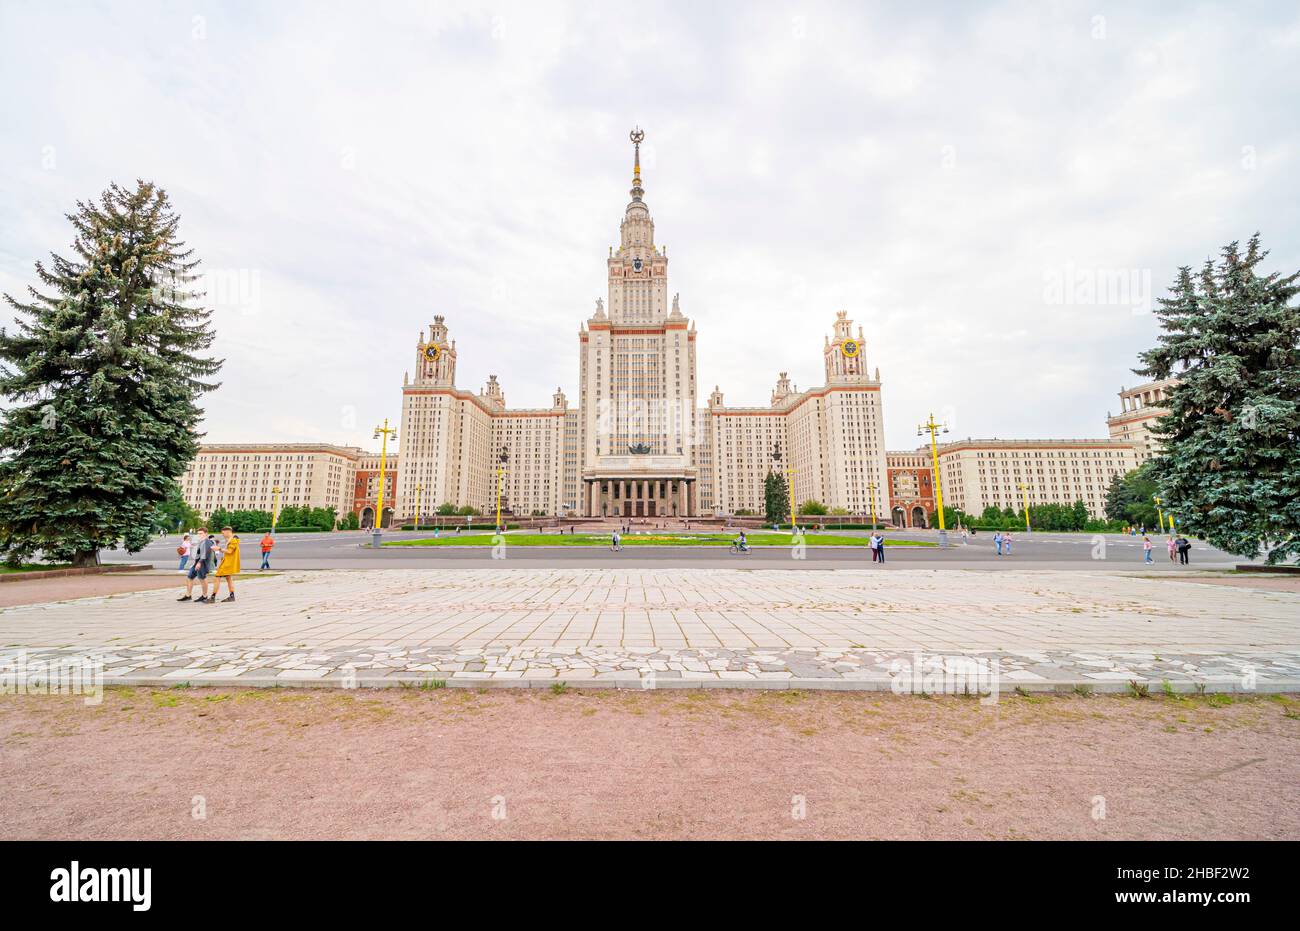 Bâtiment de l'université d'État de Moscou à l'architecture staliniste, conçu à ampire, style néo-classicien par V Rudnev, 1949-1953, Moscou, Russie Banque D'Images